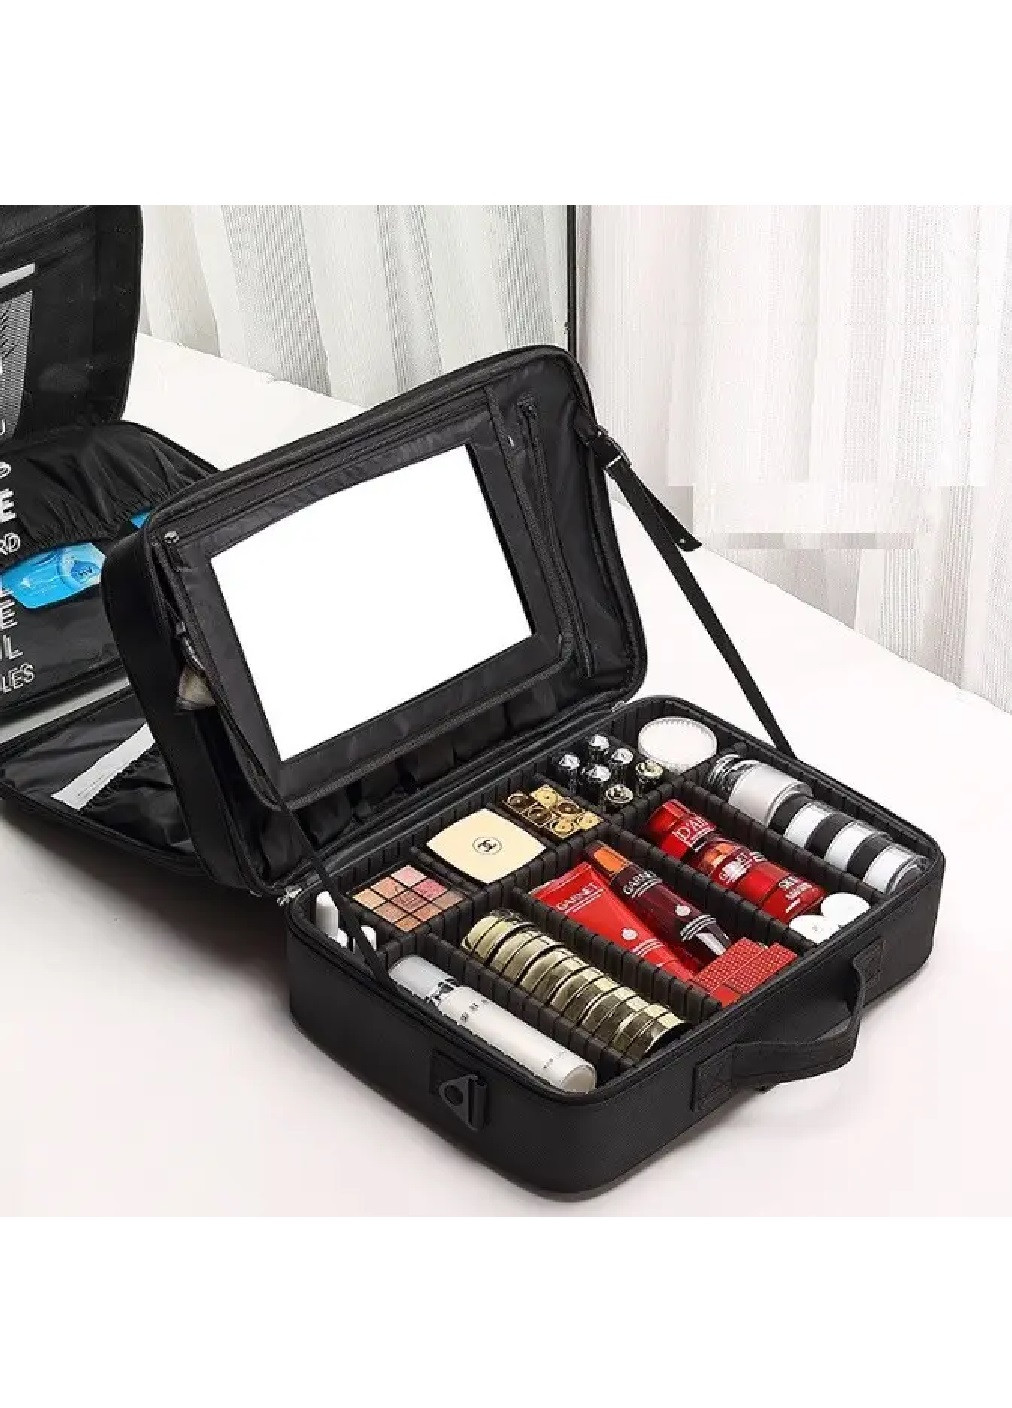 Органайзер бокс бьюті кейс косметичка валіза сумка для зберігання косметики з дзеркалом 43х31х17 см (474699-Prob) Чорний Unbranded (259443743)